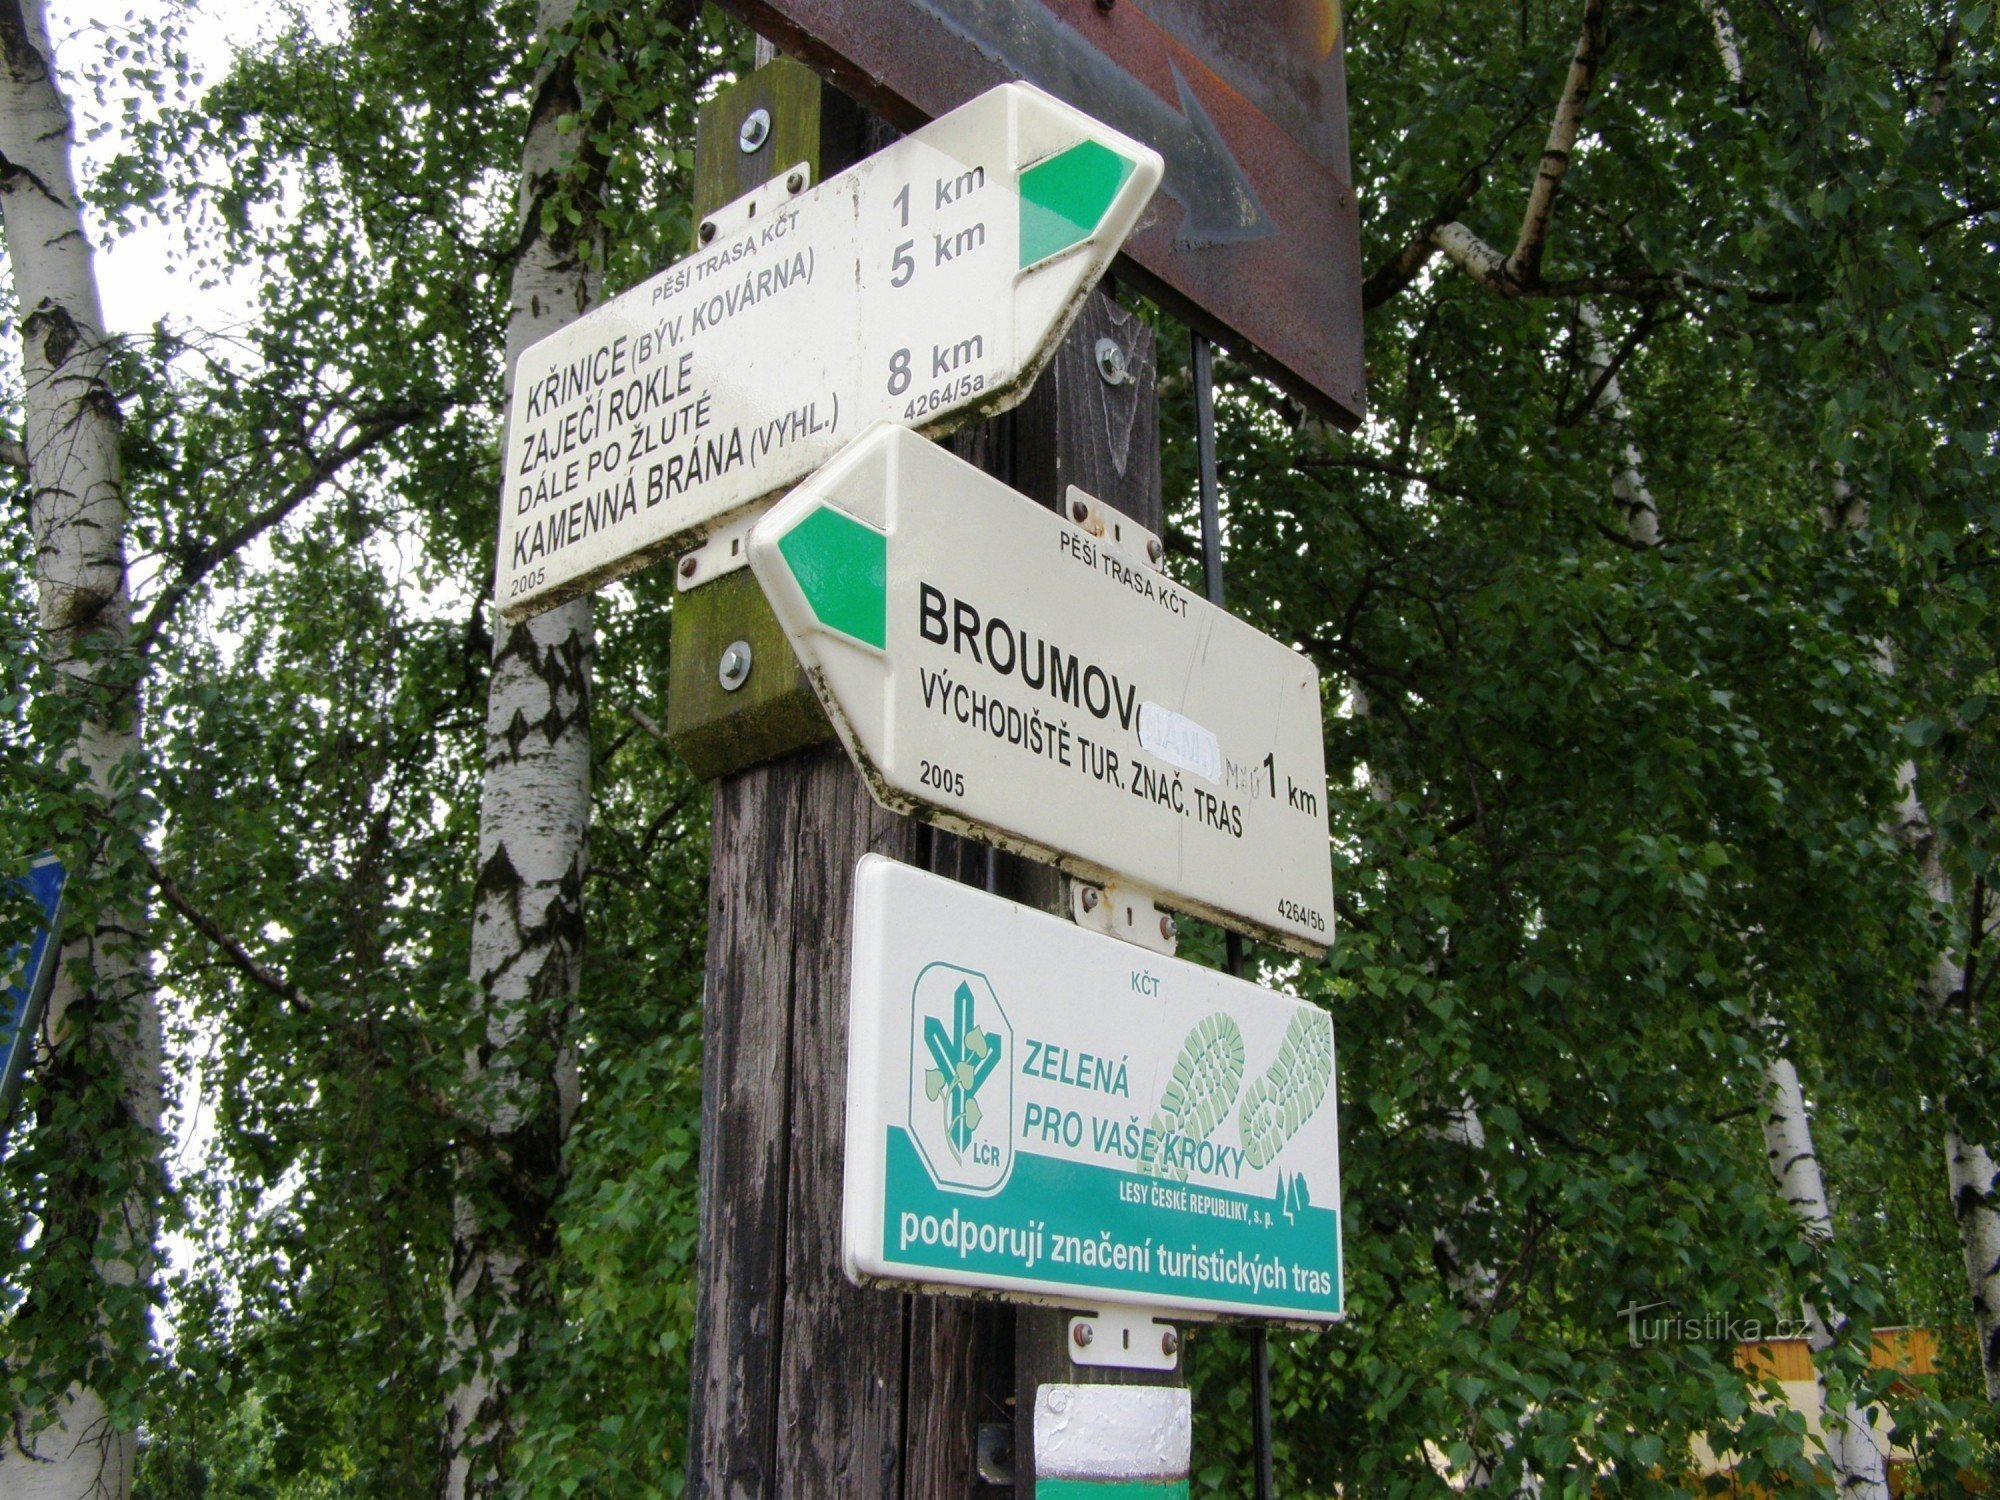 encruzilhada turística Broumov - perto da igreja de madeira (perto do hospital)